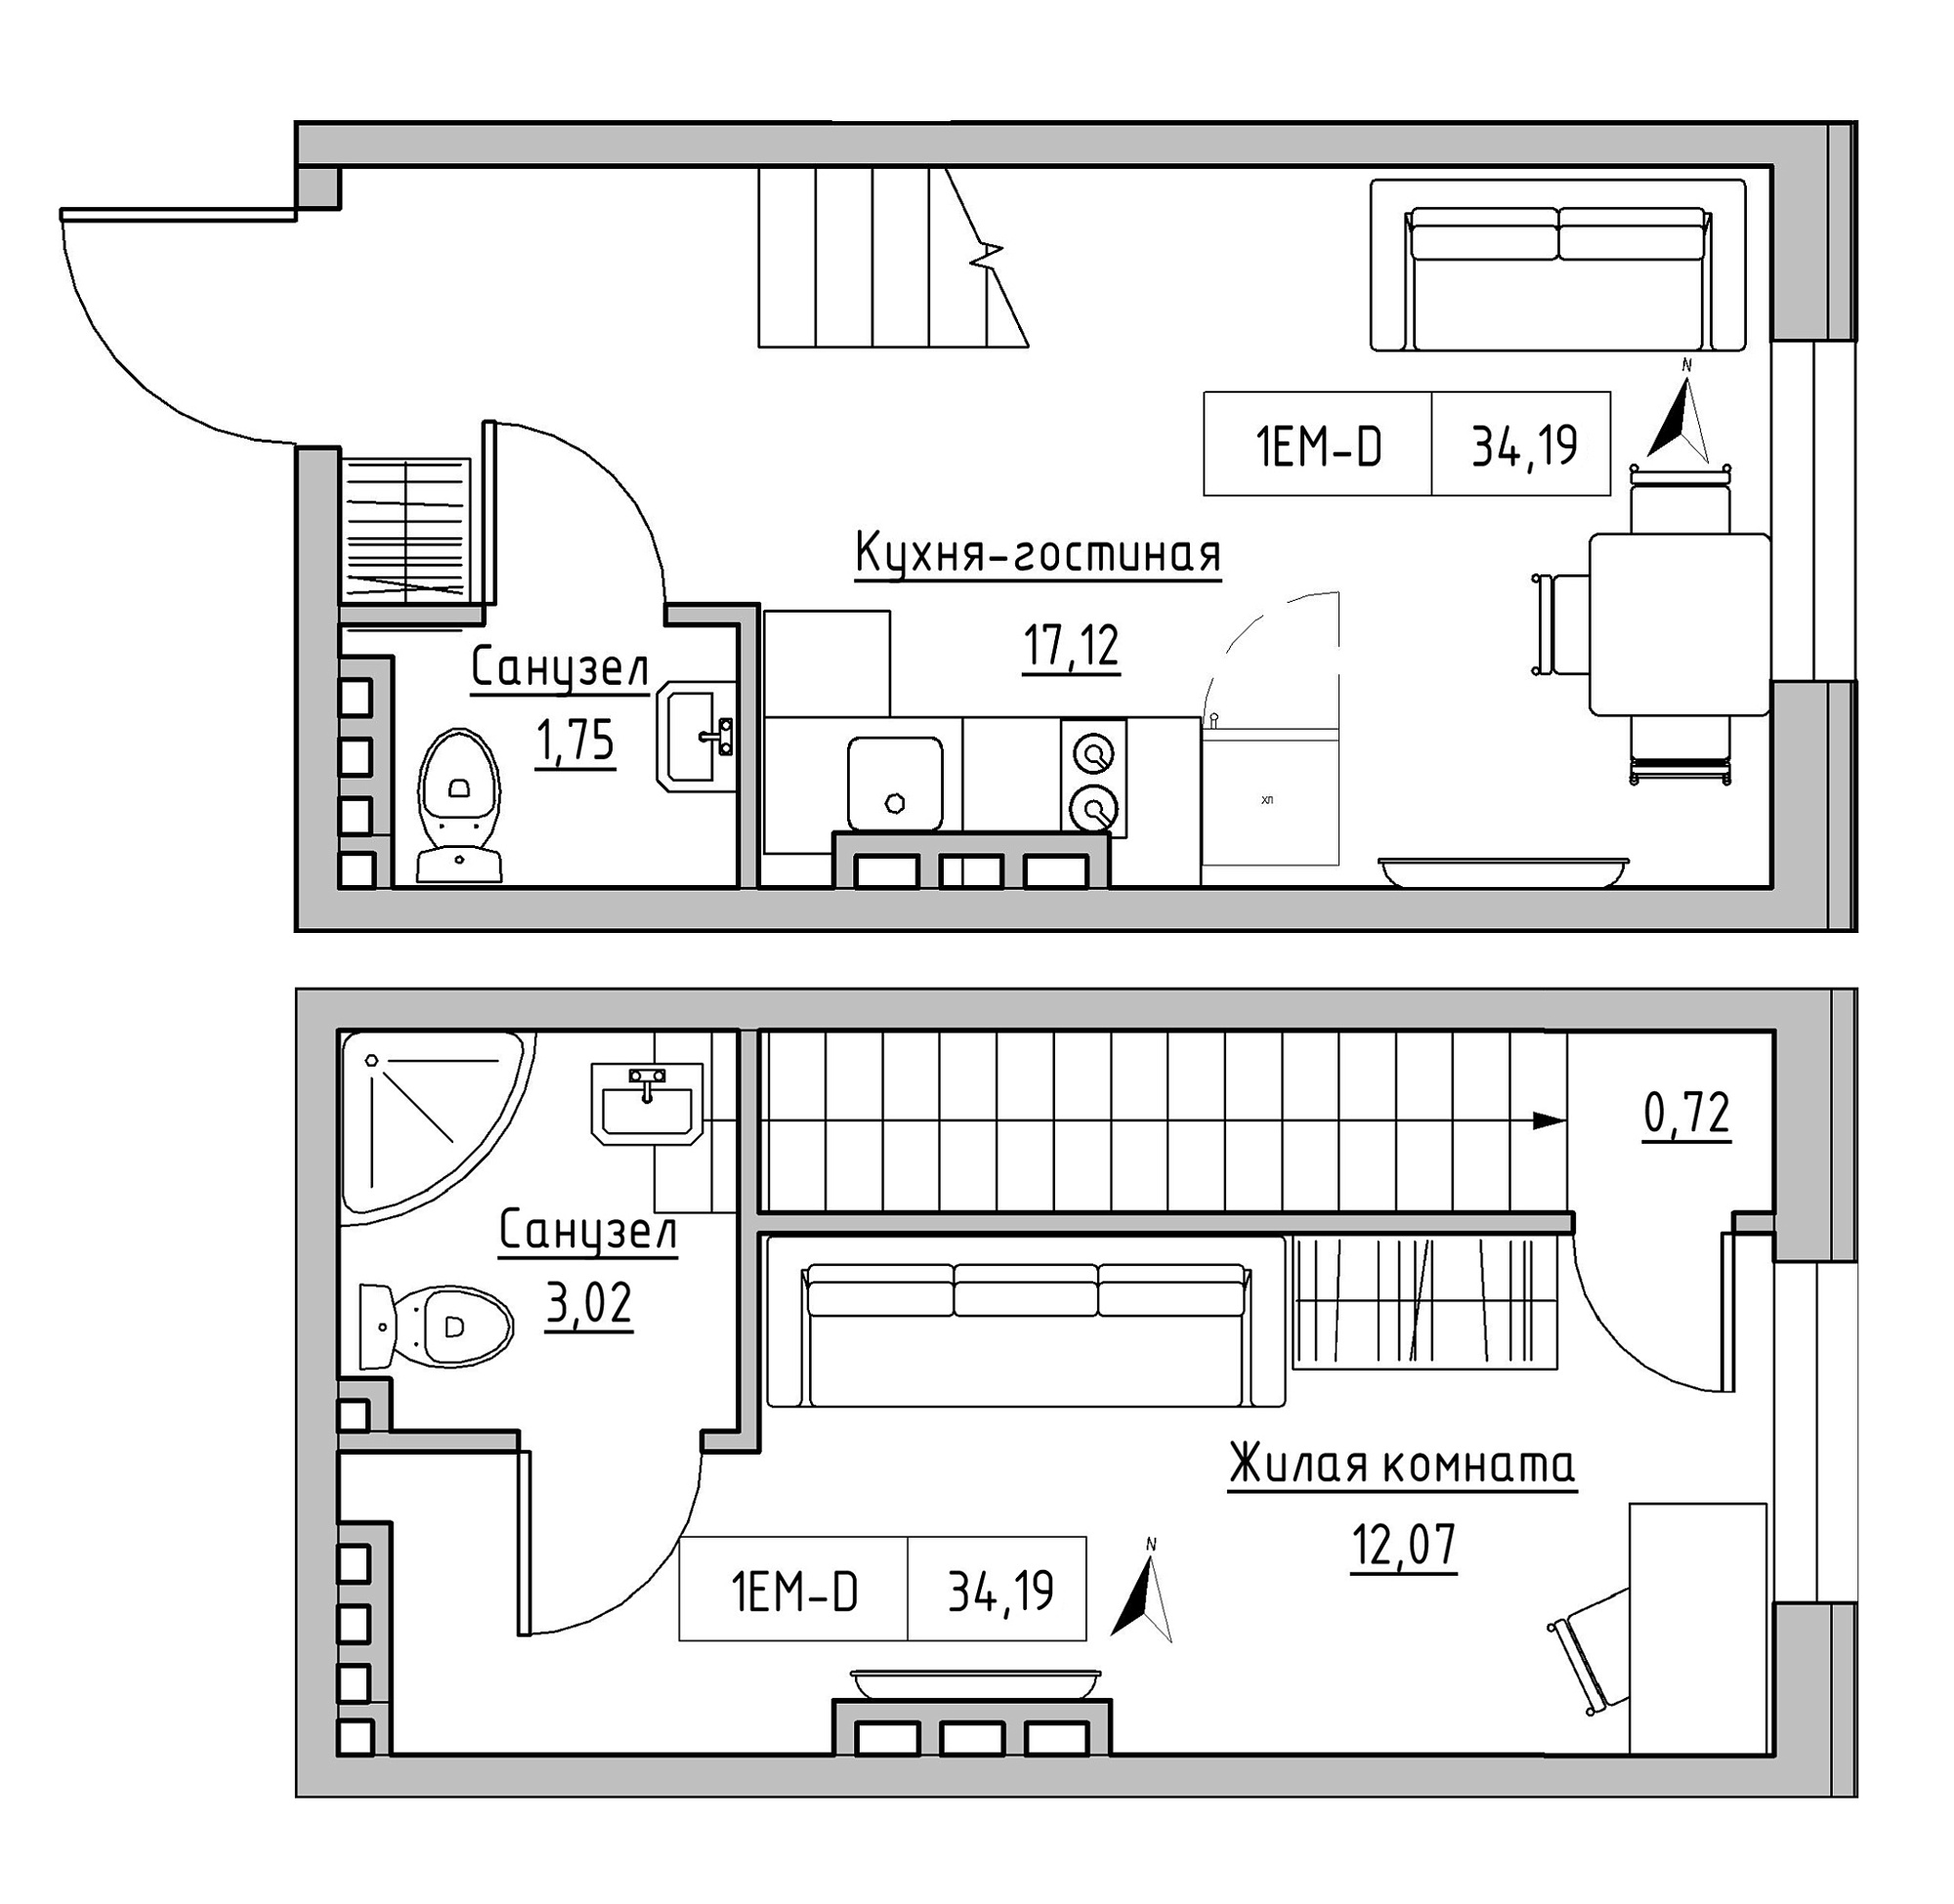 Planning 2-lvl flats area 34.19m2, KS-024-03/0016.